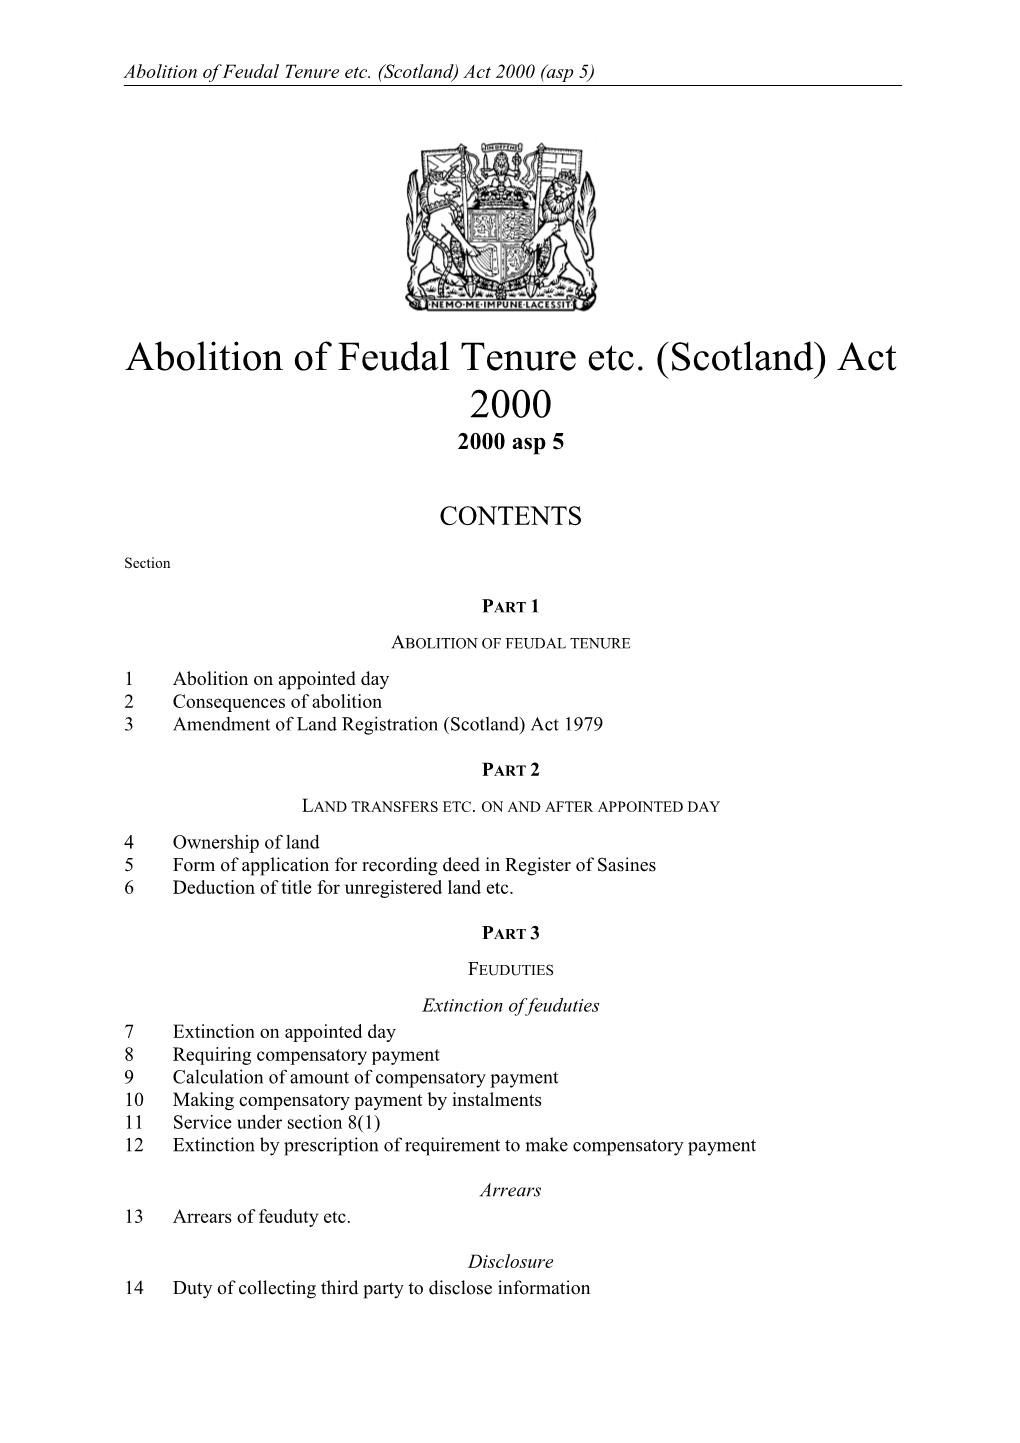 Scotland) Act 2000 (Asp 5